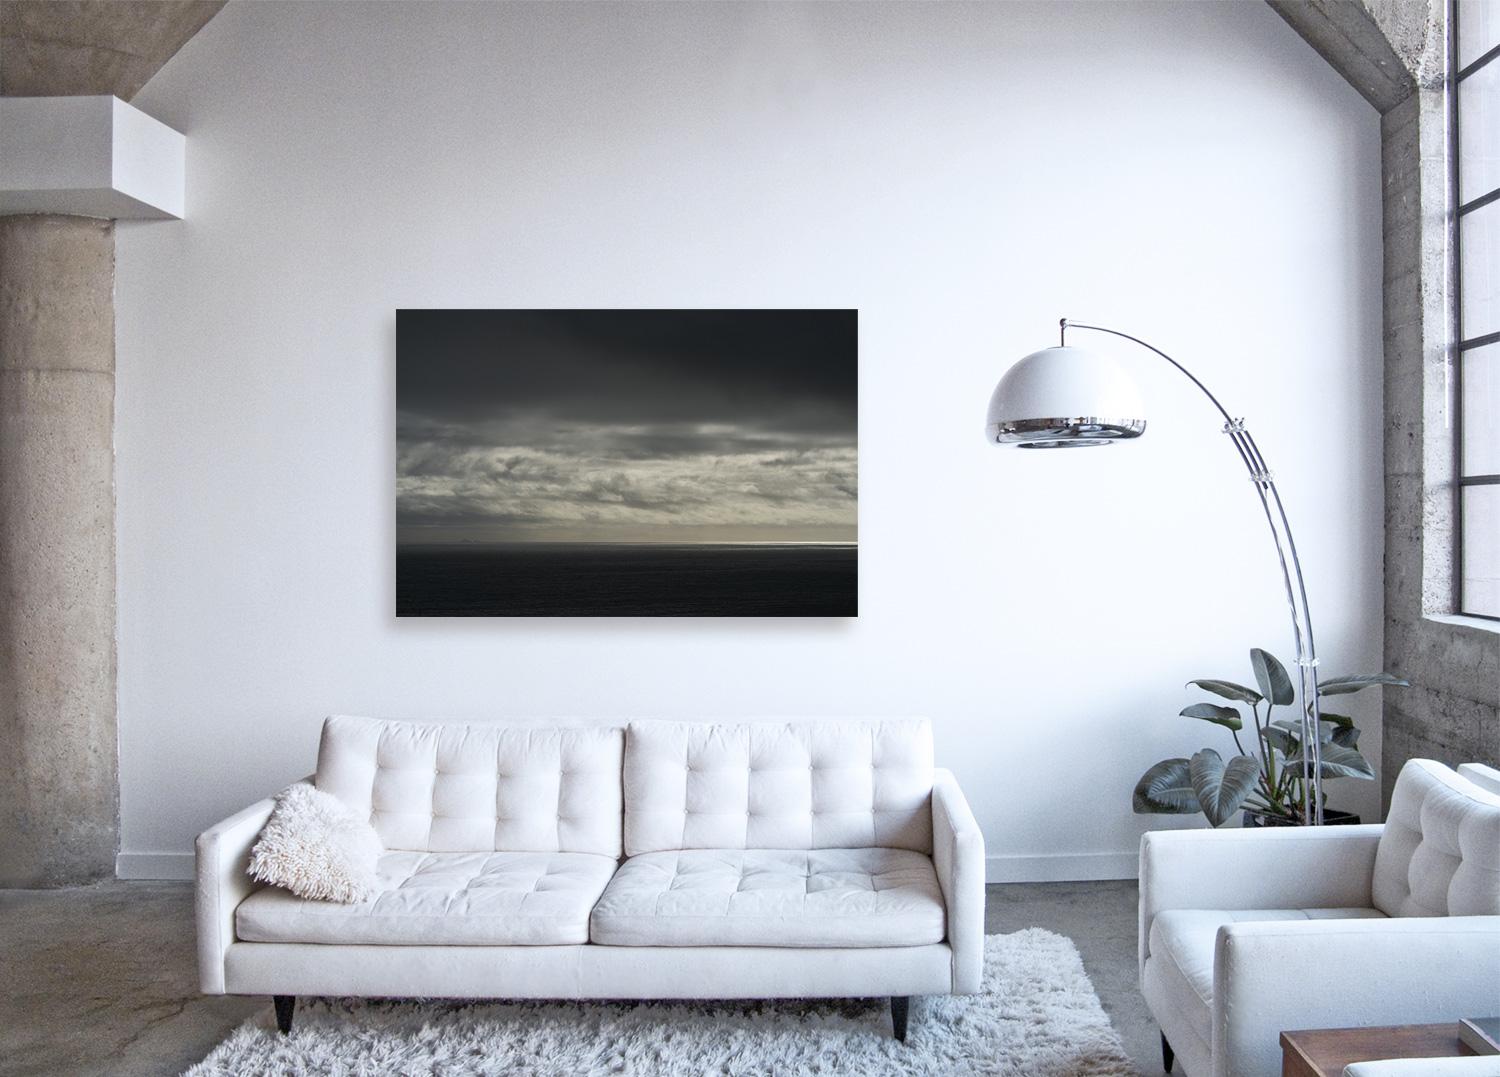 Étude de nuages IV - photographie à grande échelle d'un paysage de nuages dramatique et motherochromatic - Contemporain Print par Frank Schott